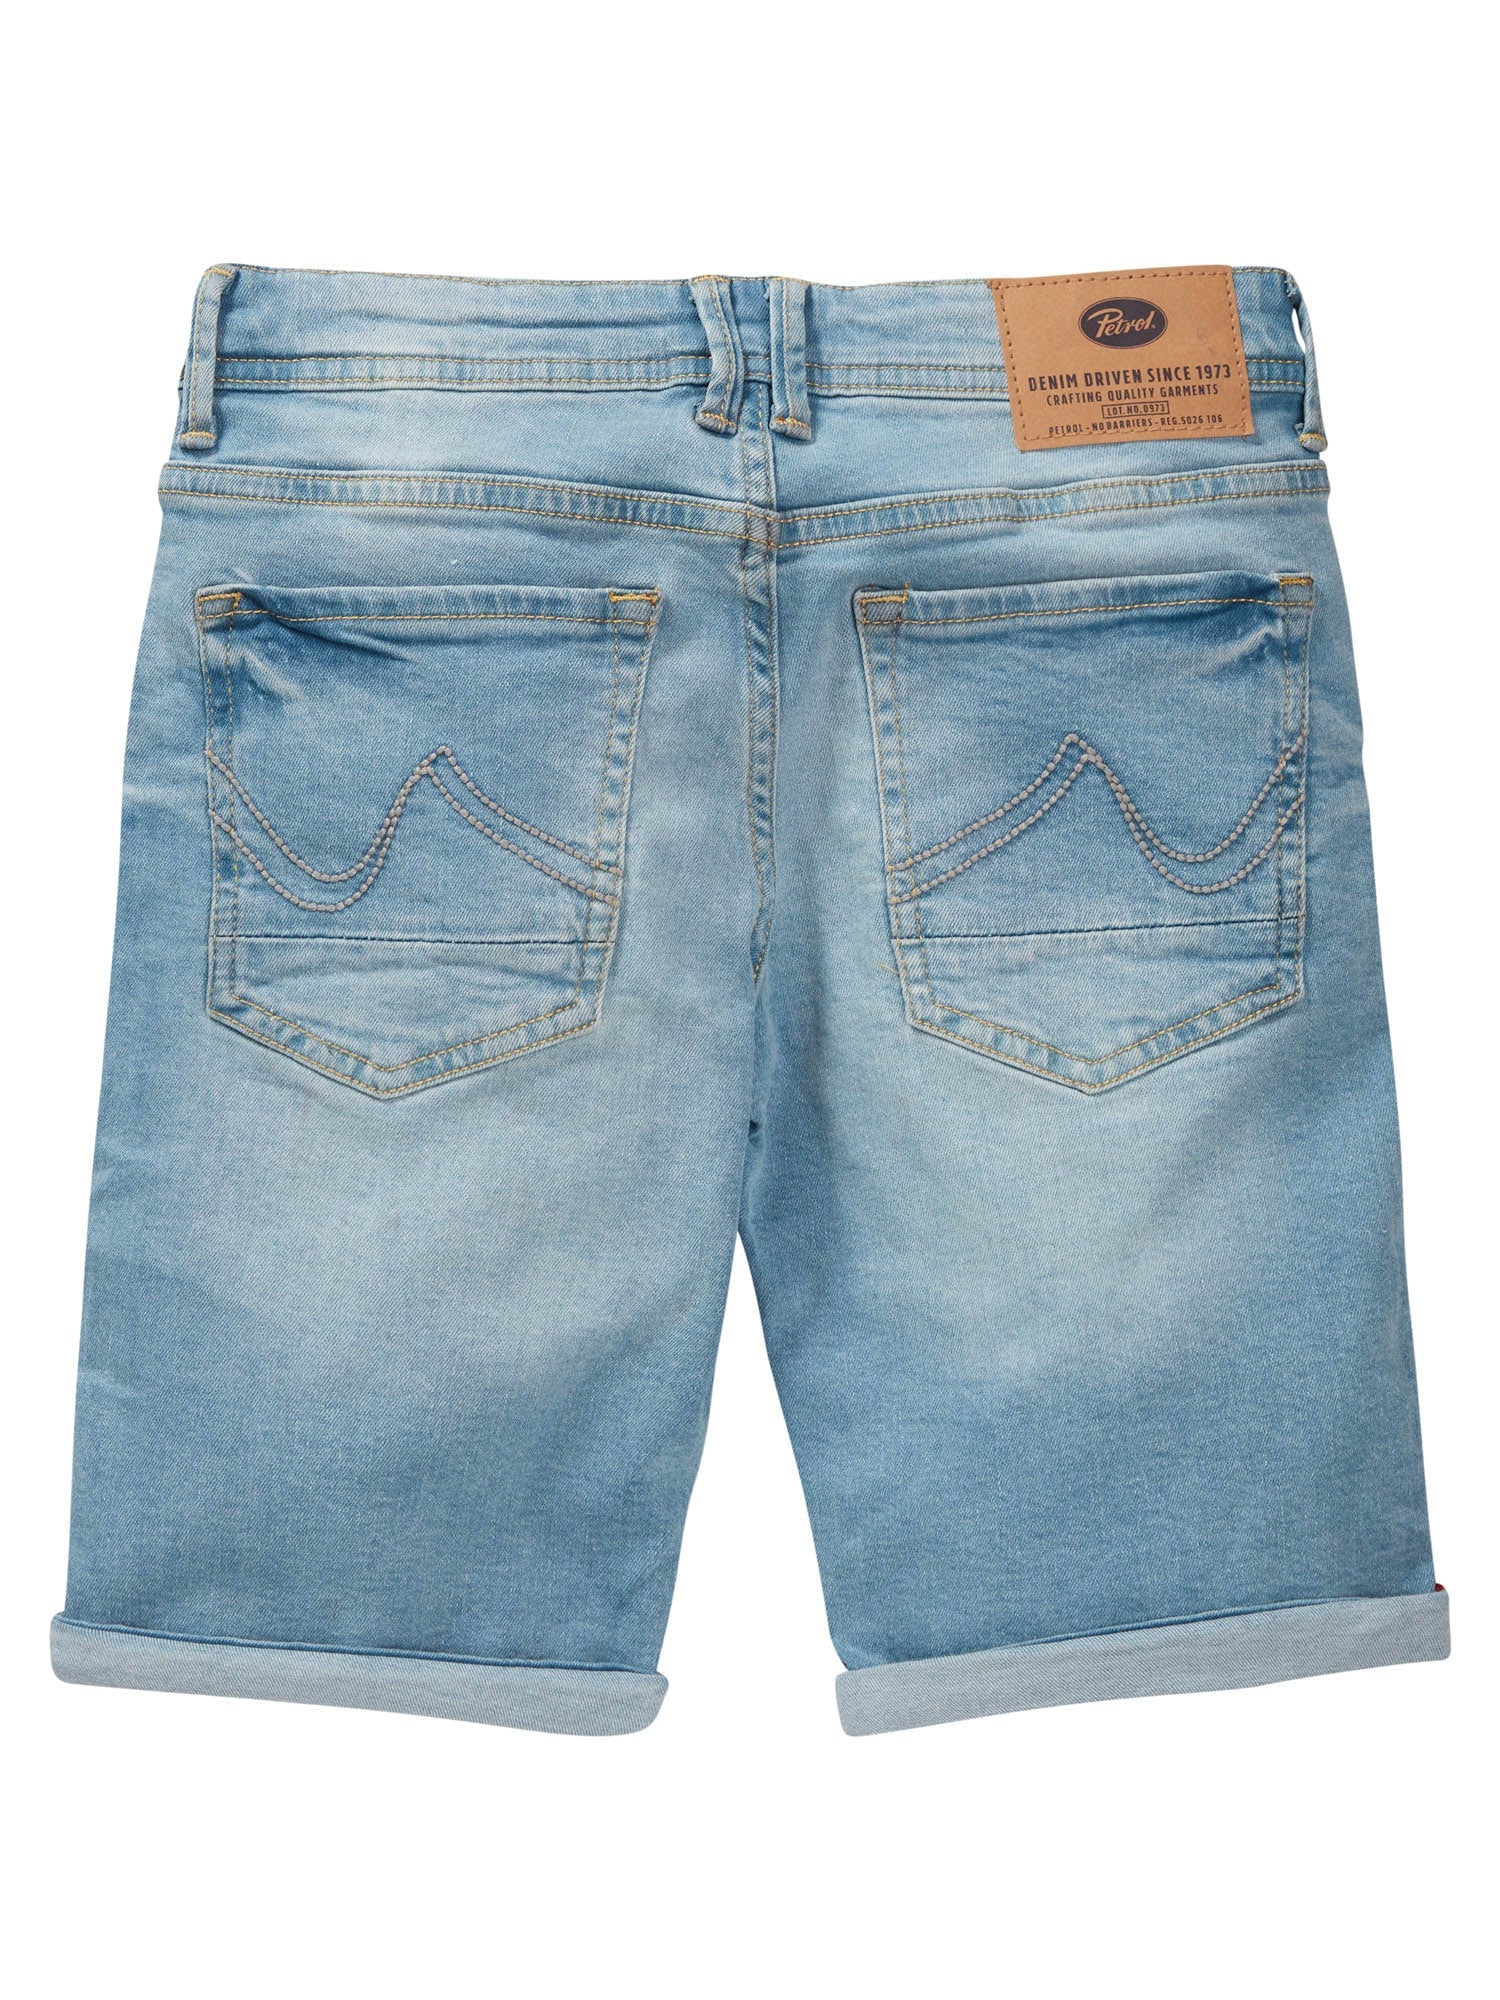 Jongens Jeans short five-pocket van Petrol in de kleur Bleached in maat 176.